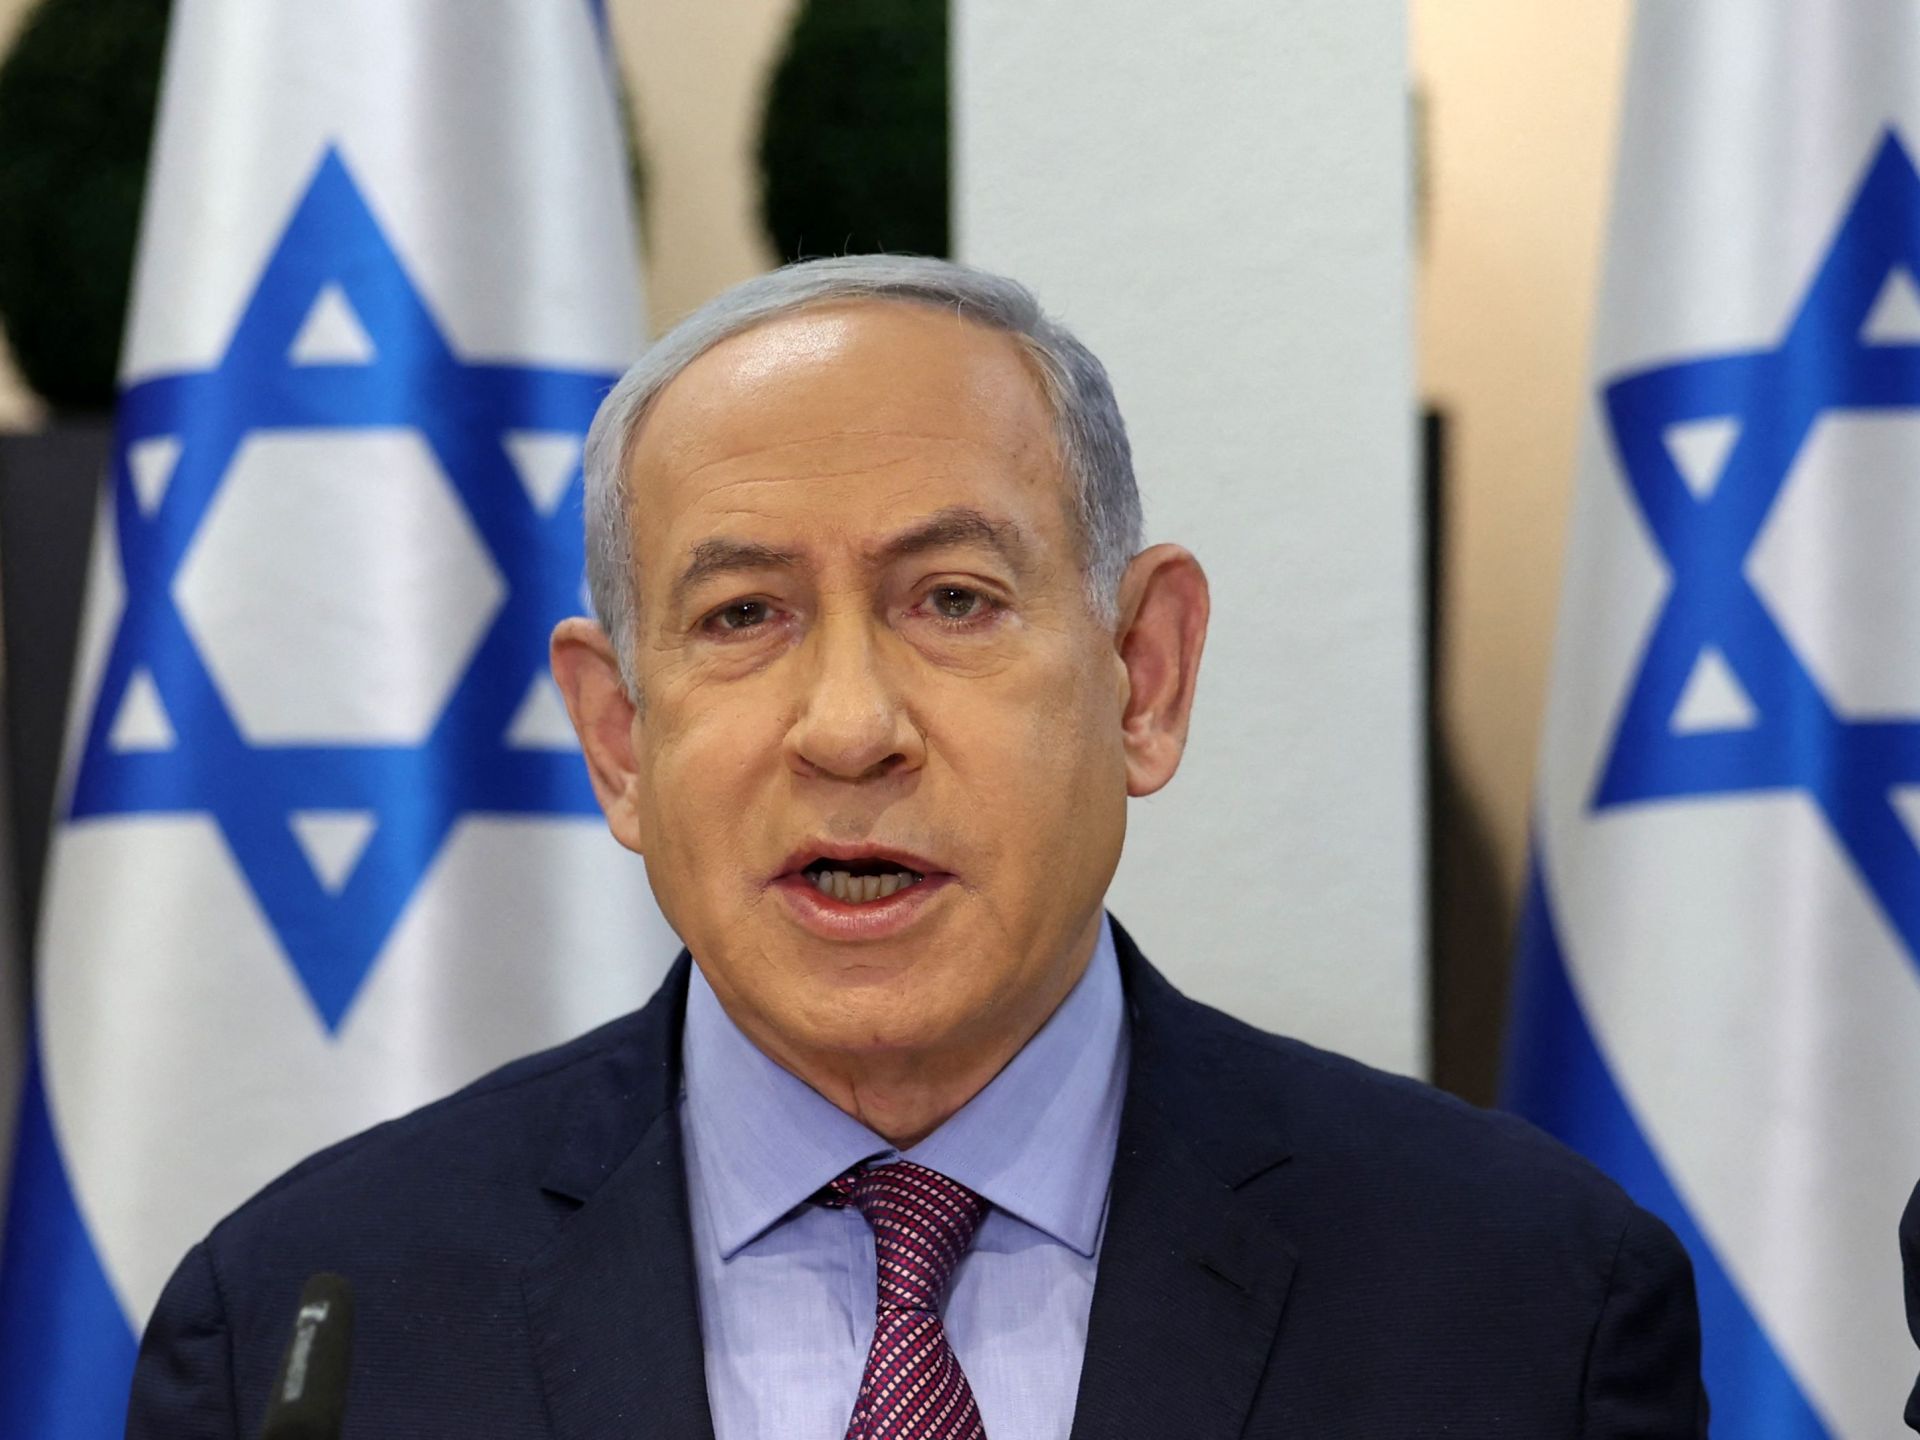 نتنياهو يرفض “الإملاءات” بشأن إقامة دولة فلسطينية | أخبار – البوكس نيوز